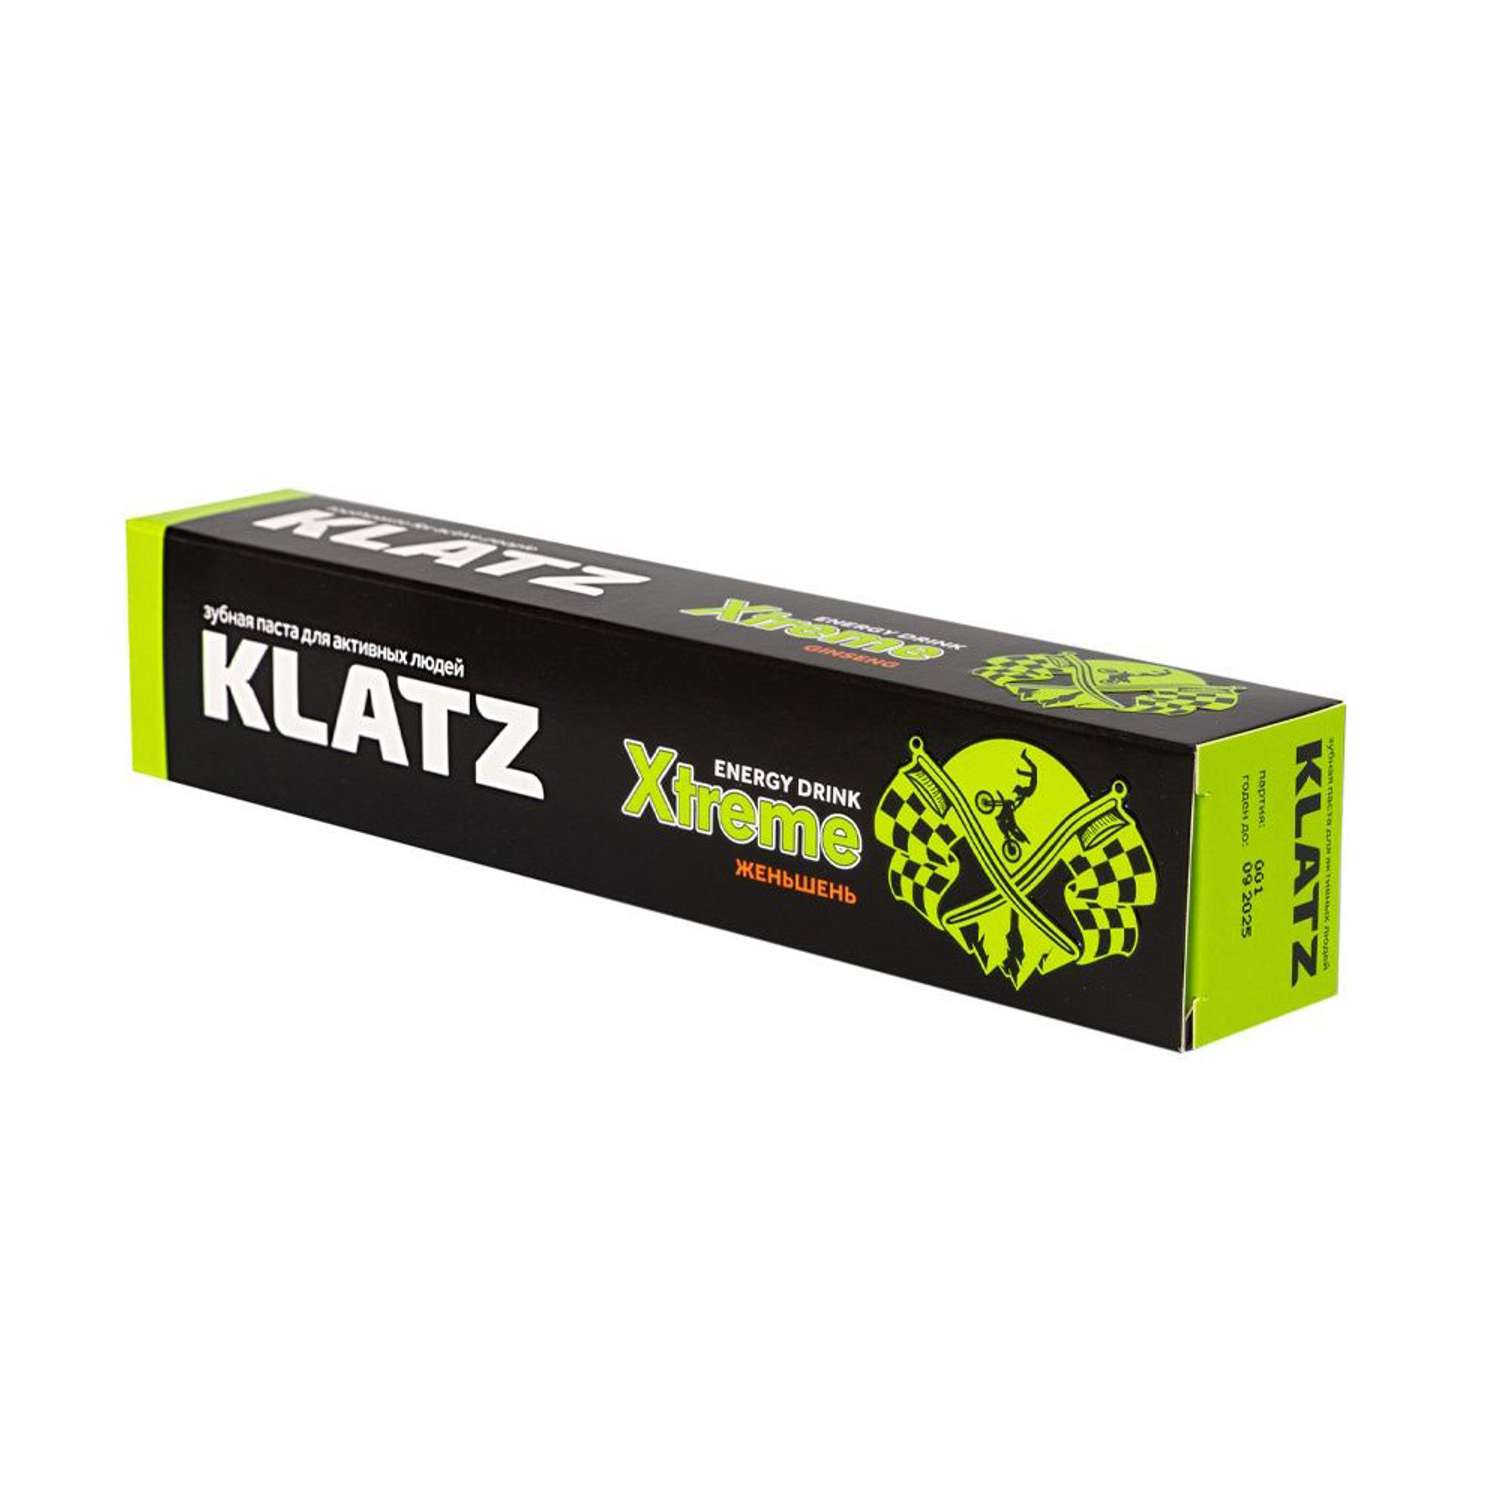 Зубная паста KLATZ для активных людей X-treme Energy drink Женьшень 75мл - фото 3